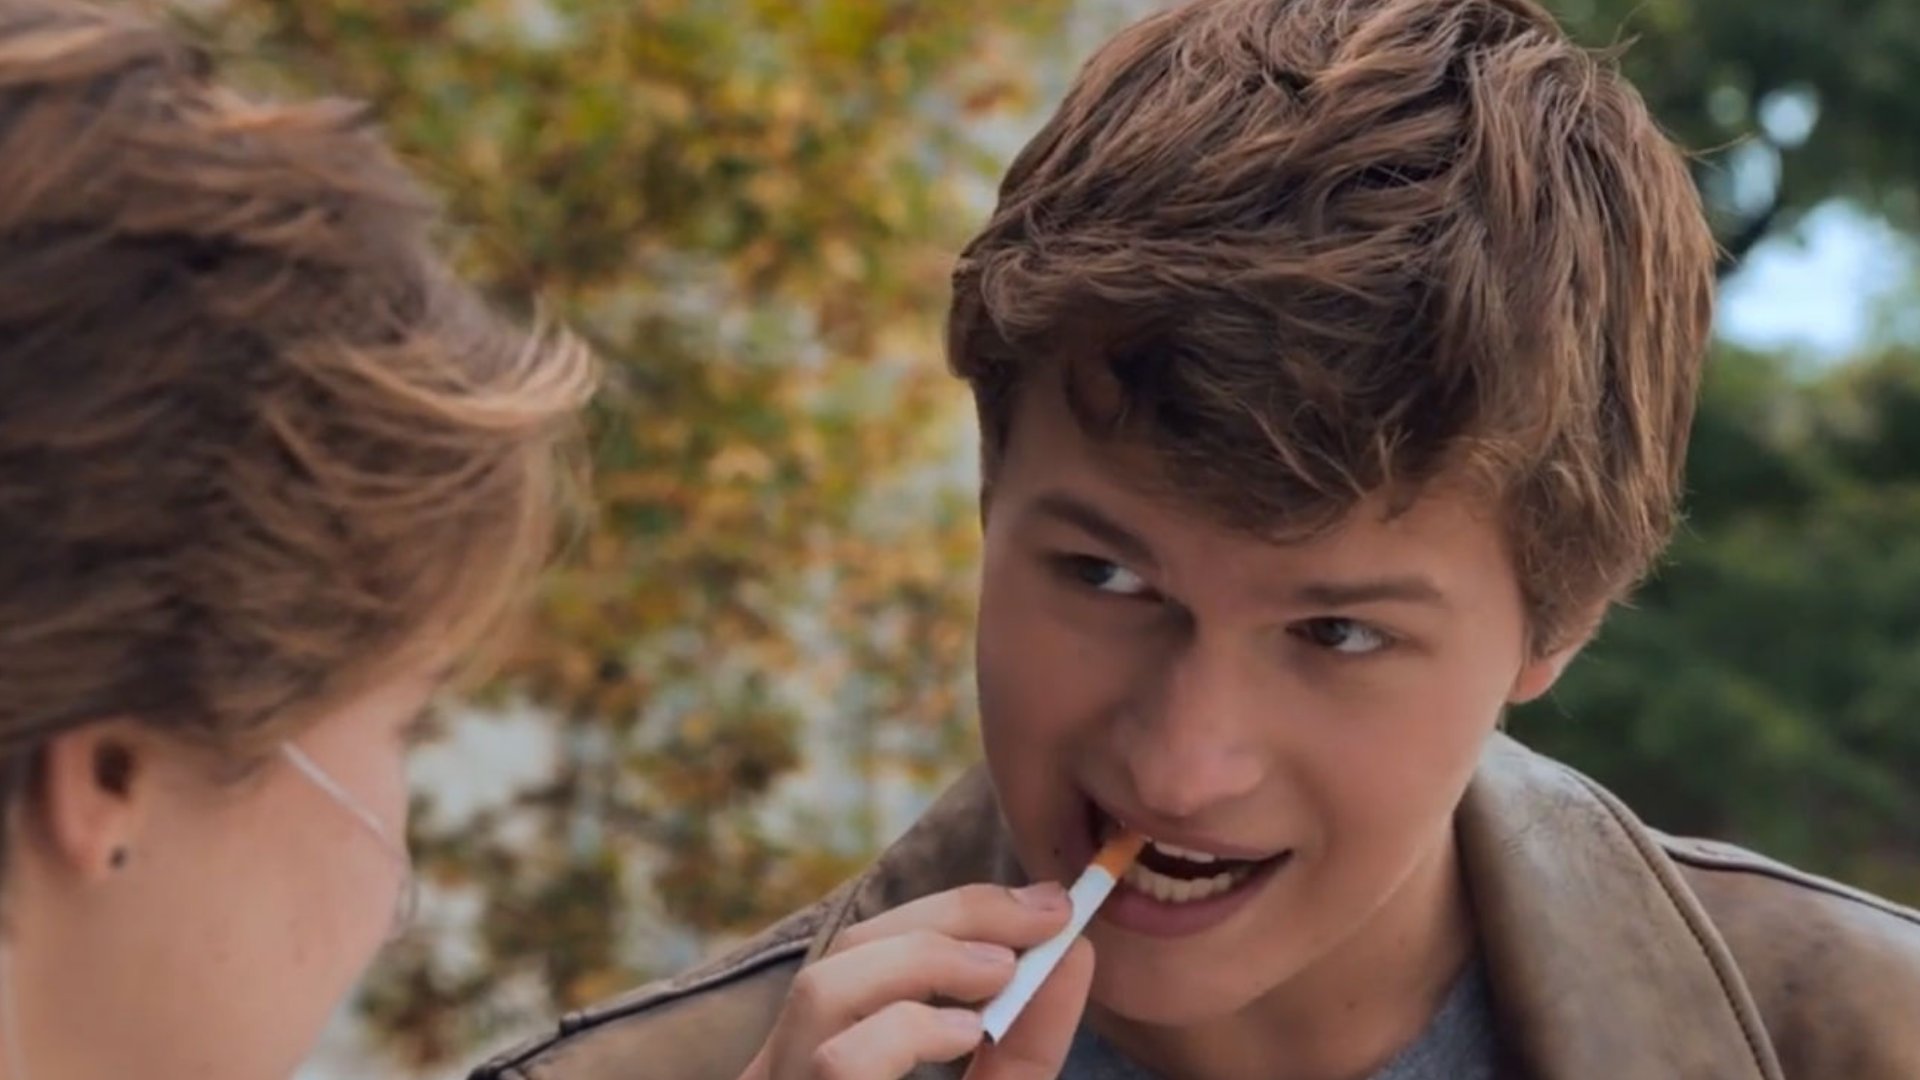 Augustus olhando para Hazel enquanto bota um cigarro na boca